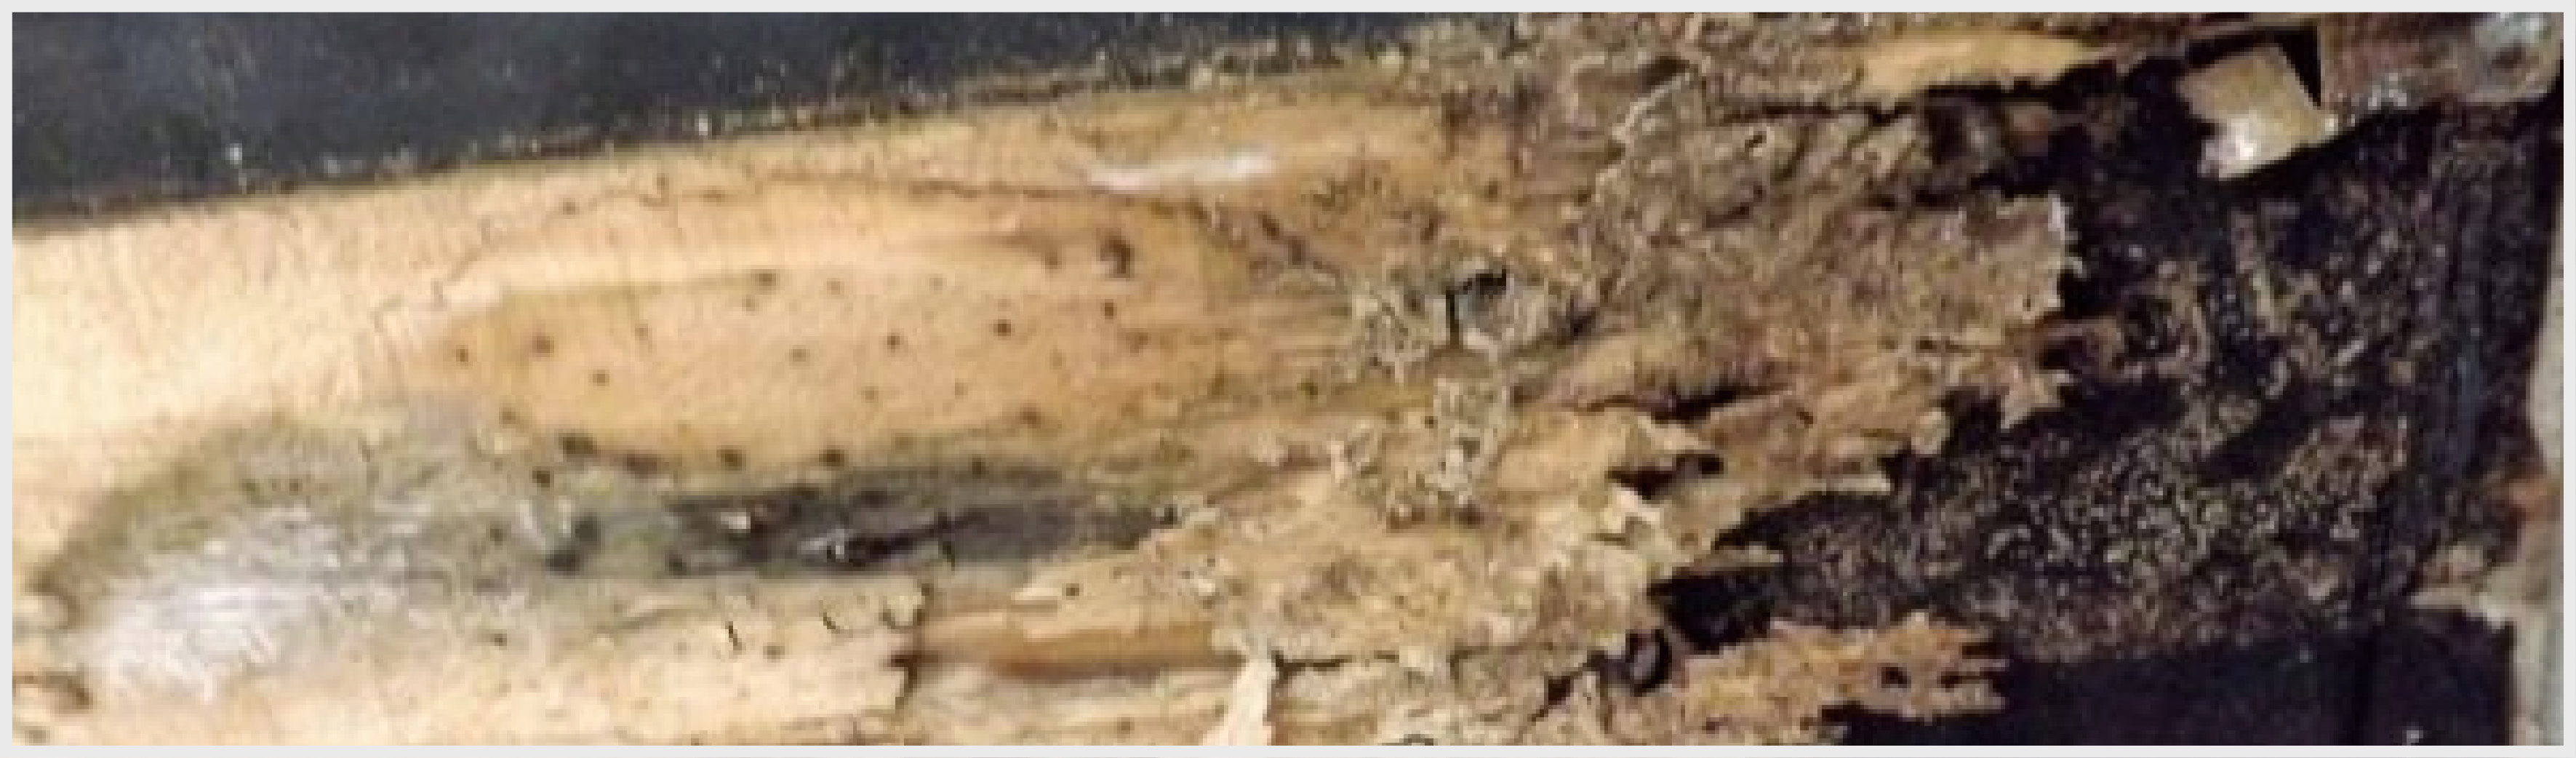 シロアリに浸食された木材